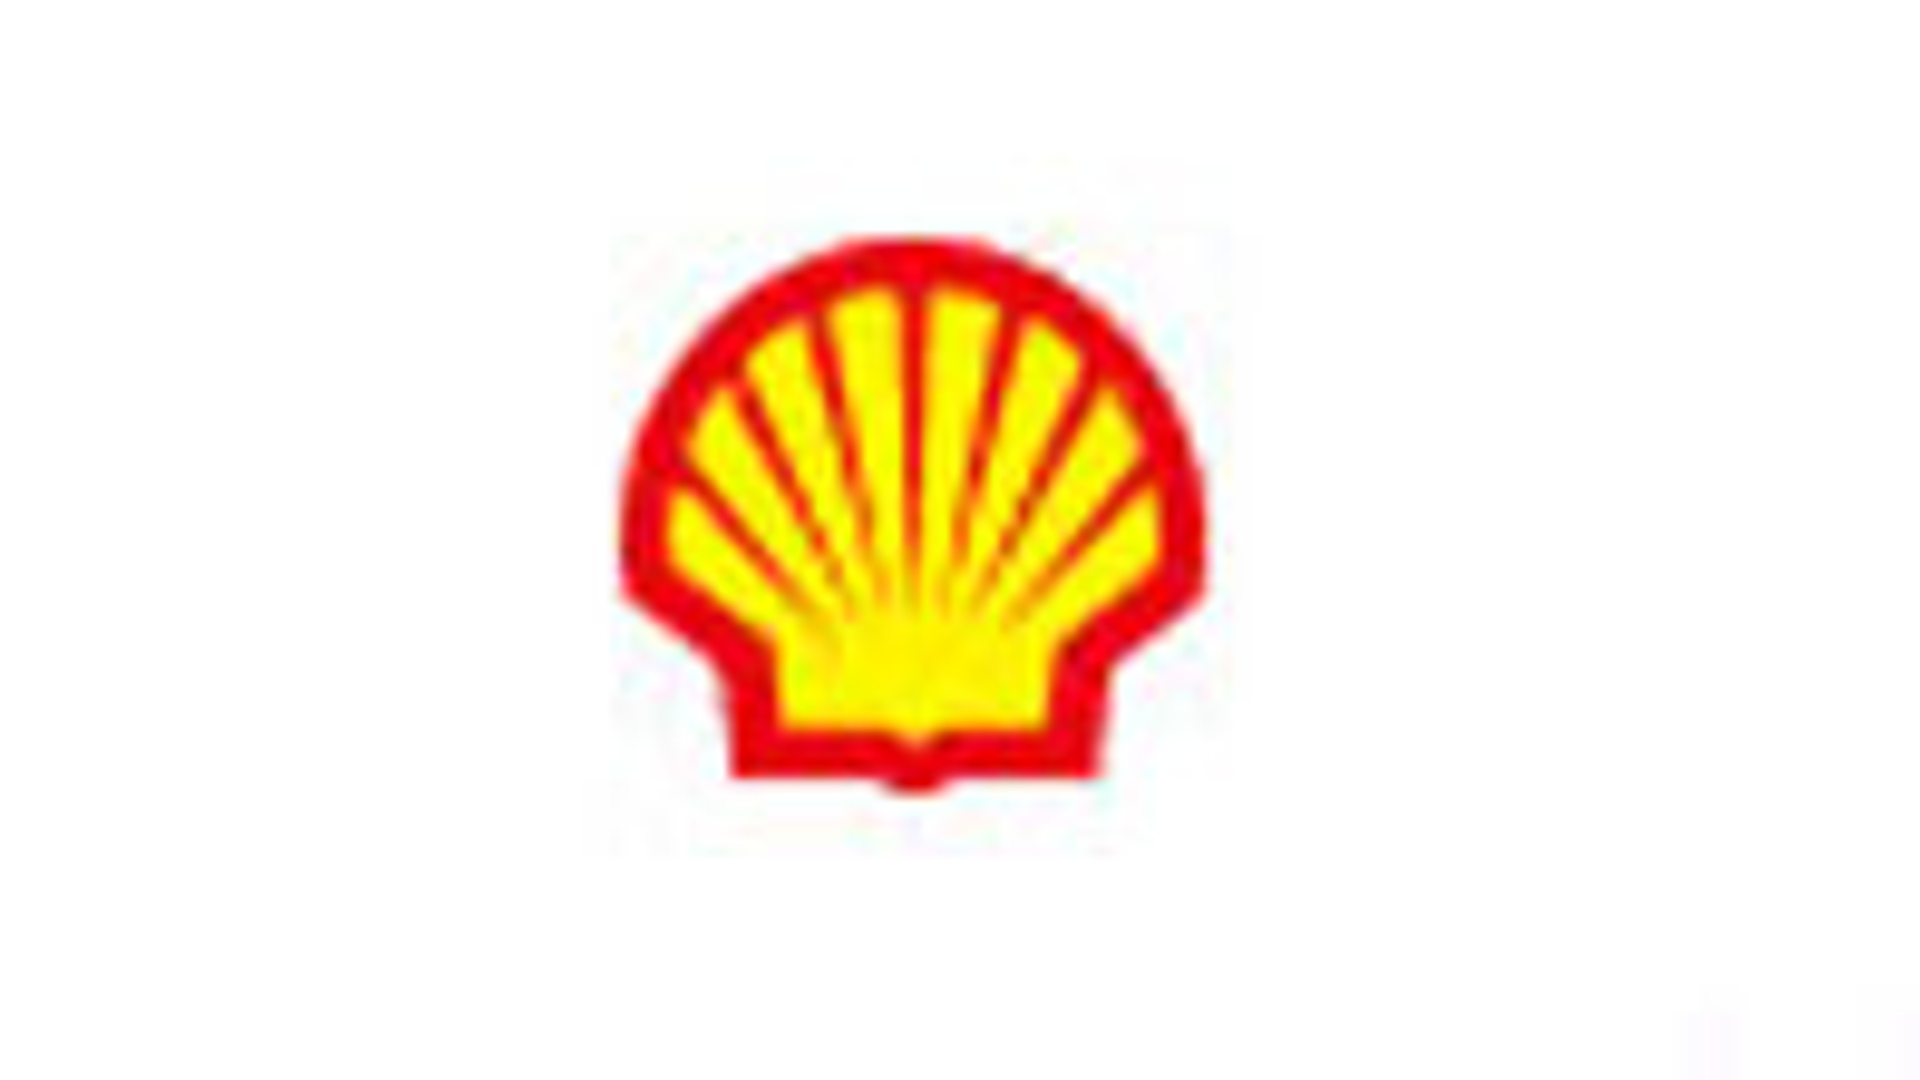 shell_logo_02.jpg